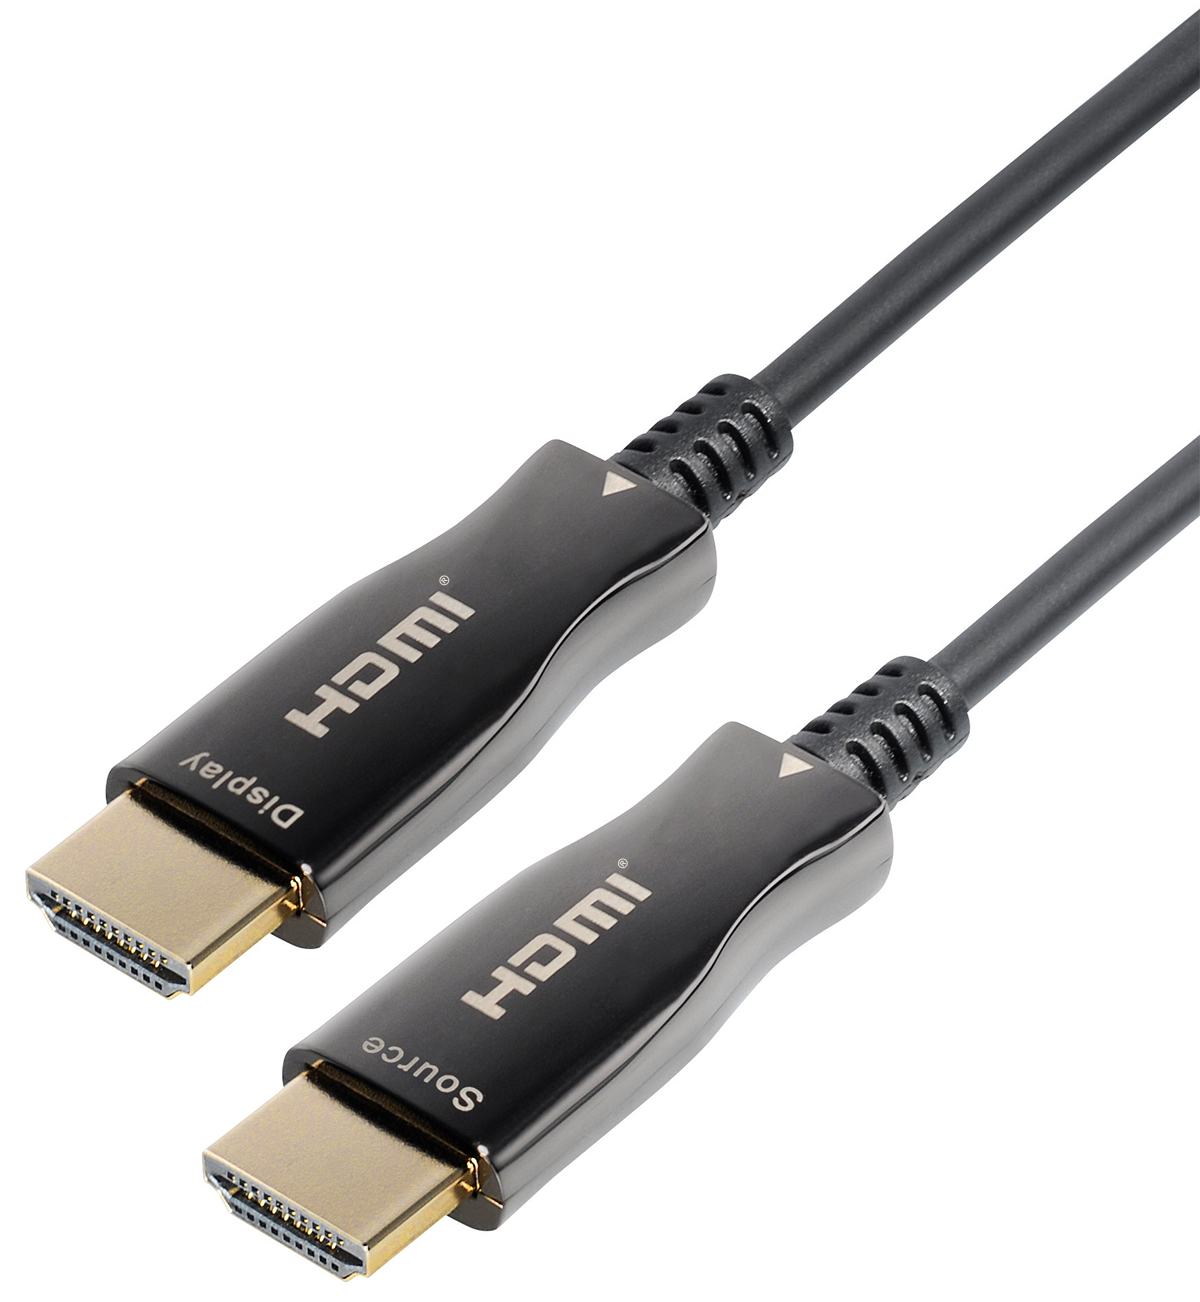 Transmedia High Speed HDMI-Kabel mit Ethernet und LED versch 4K@ 60 Hz Längen